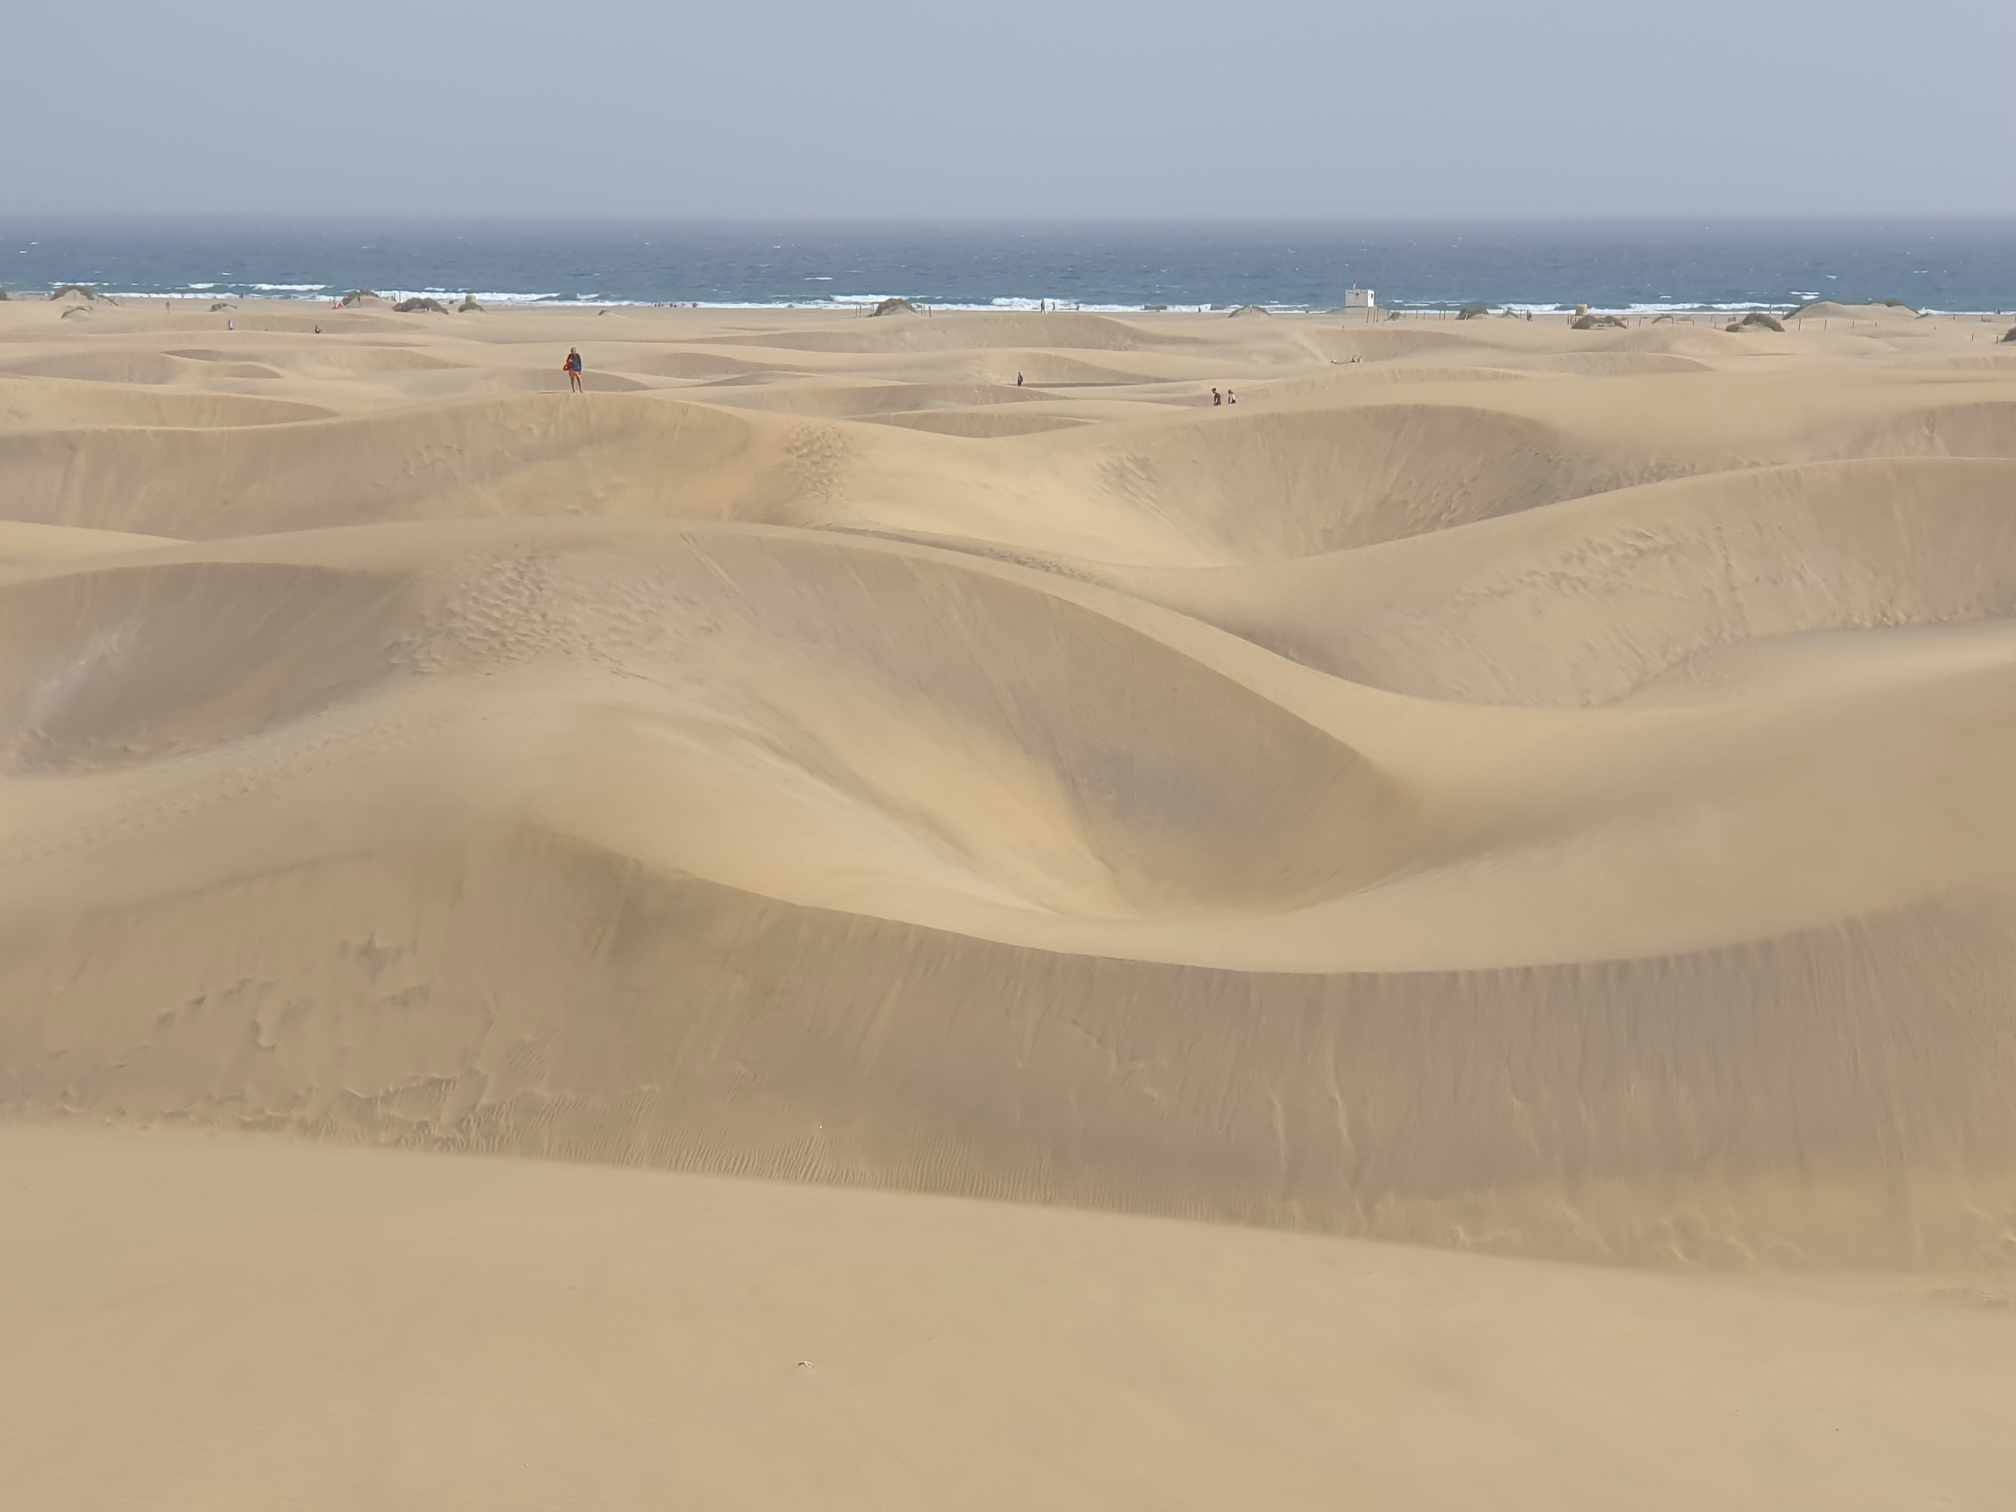 Playa del Inglés and Maspalomas dunes